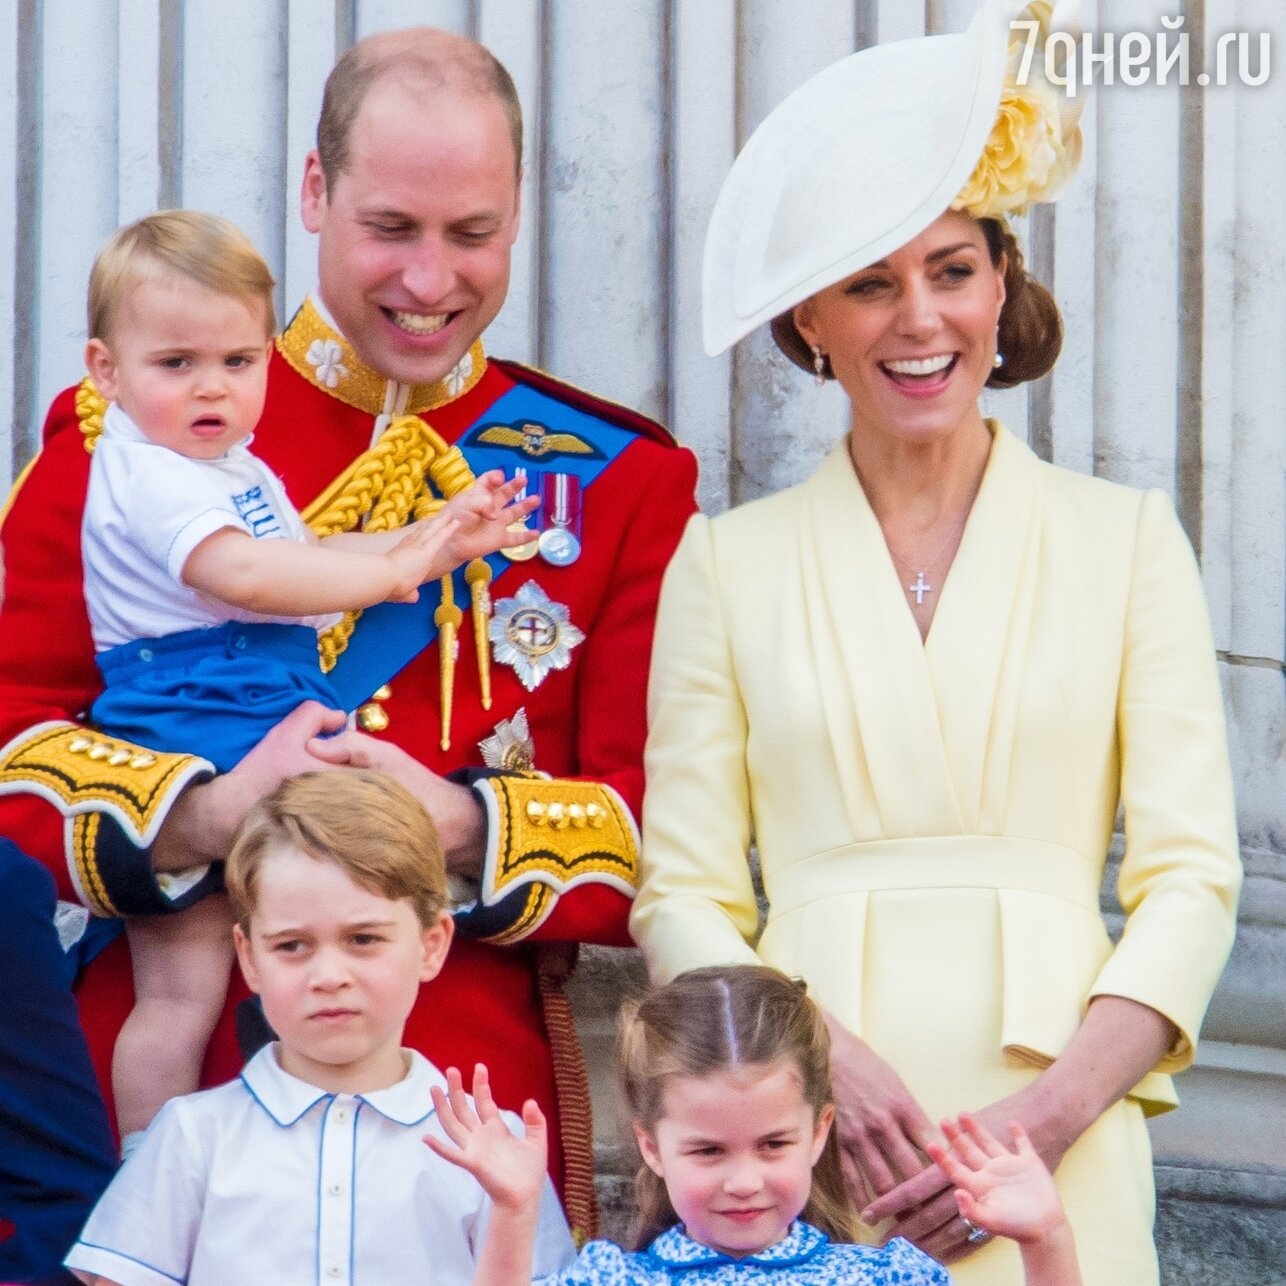 Кейт Миддлтон и принц Уиляьм с детьми - фото